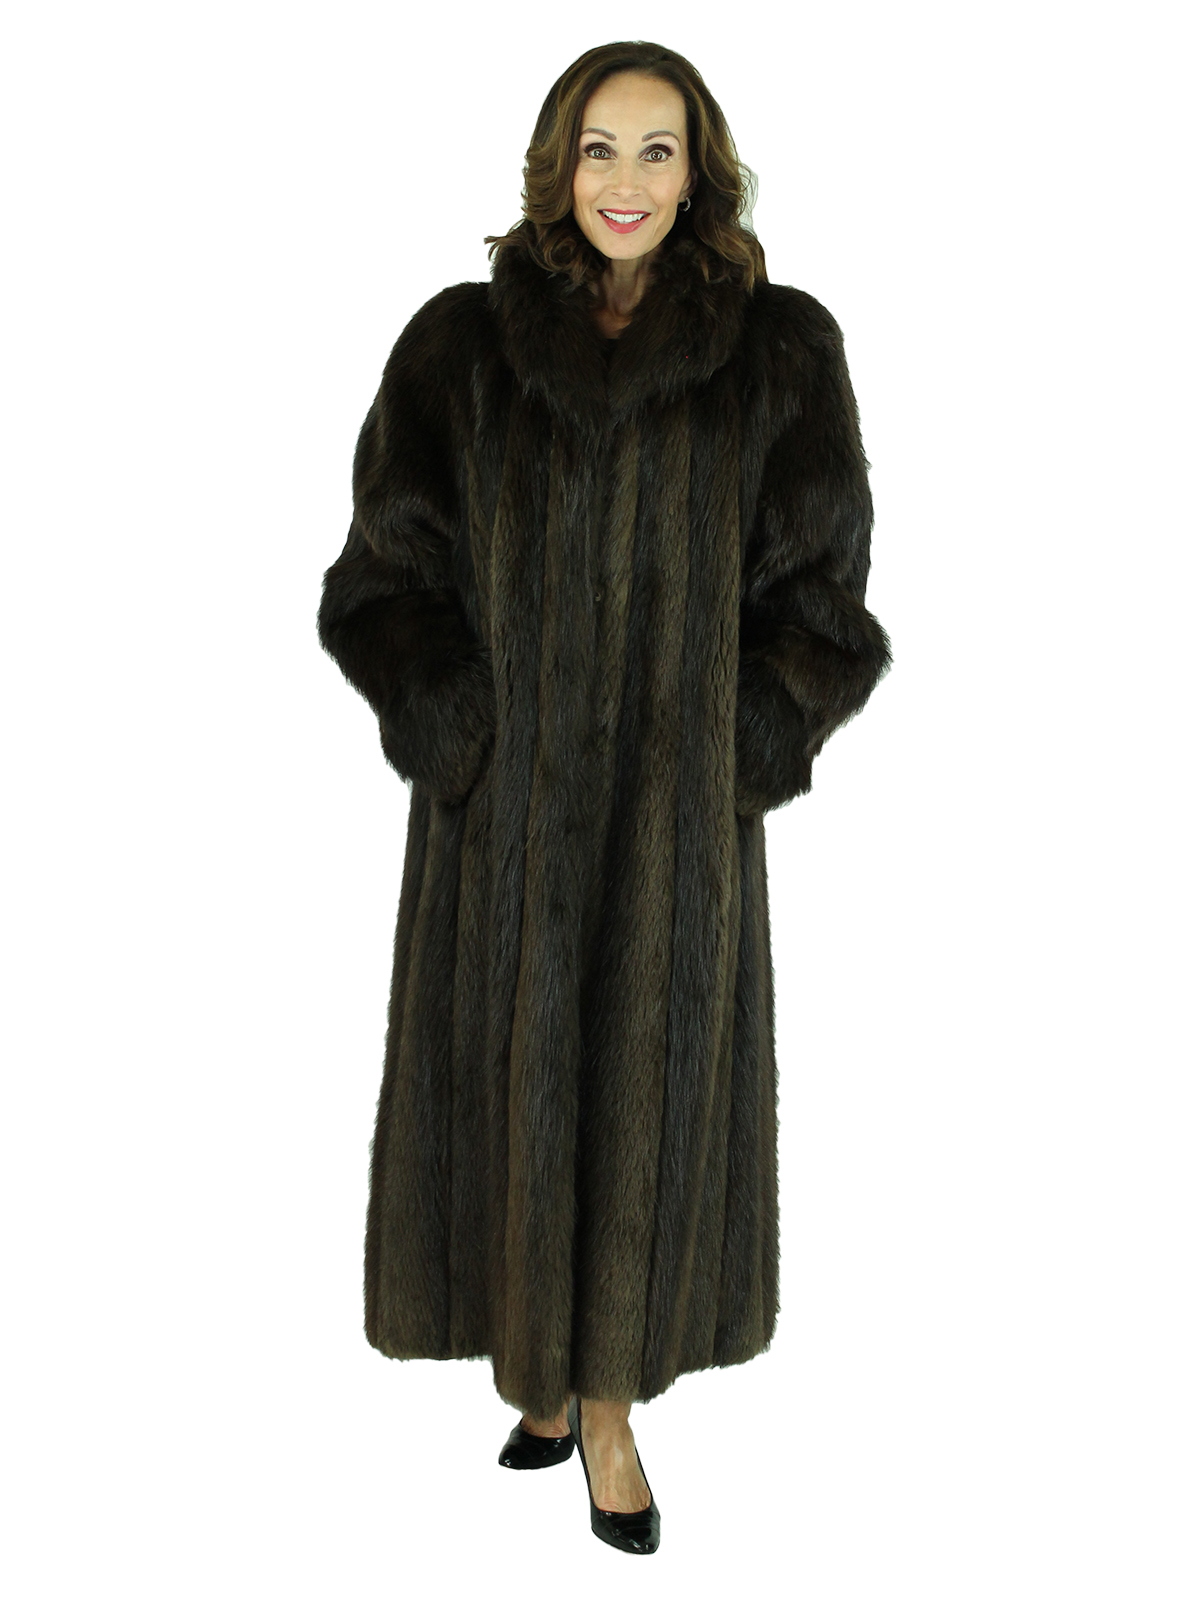 Dark Brown Beaver Fur Coat - Women's Fur Coat - Large| Estate Furs